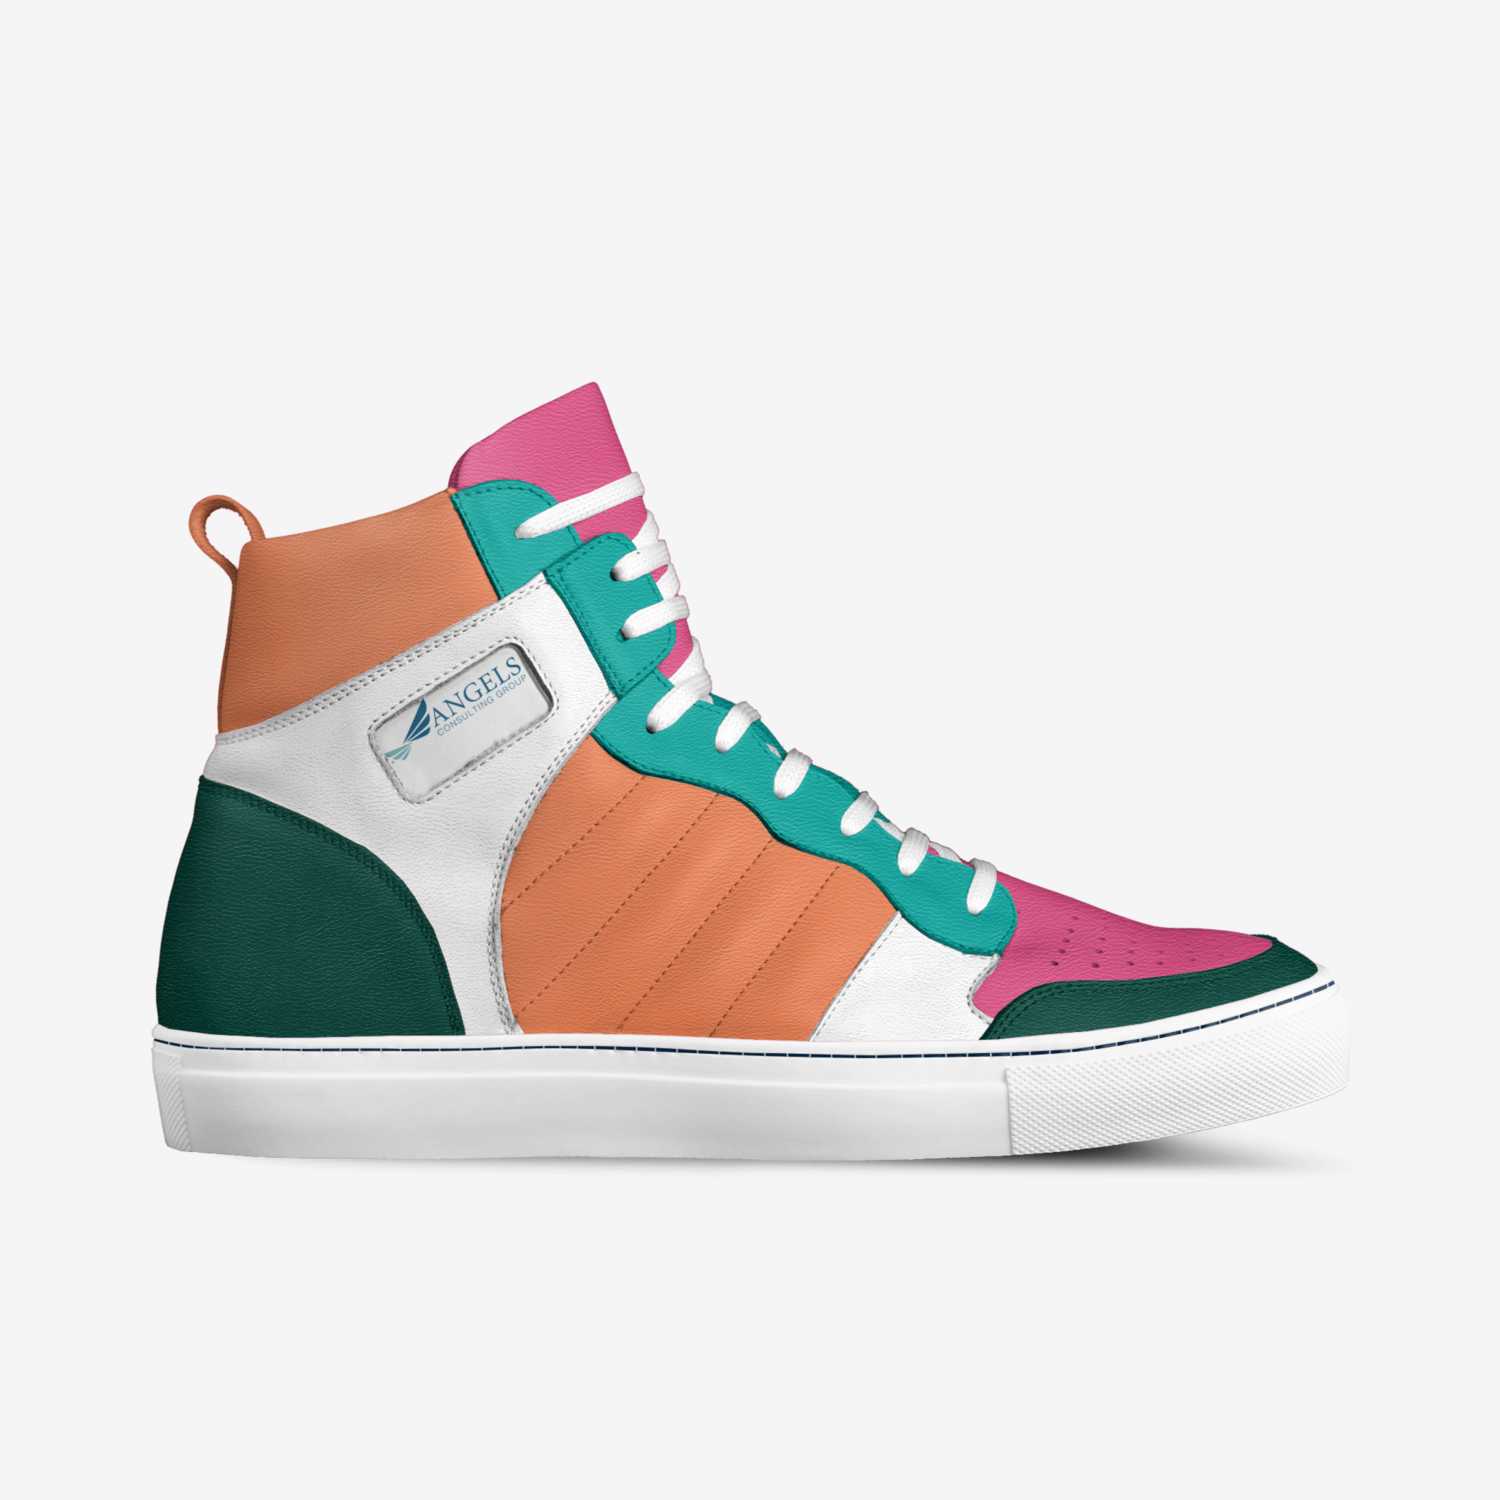 Dildo | A Custom Shoe concept by Cody